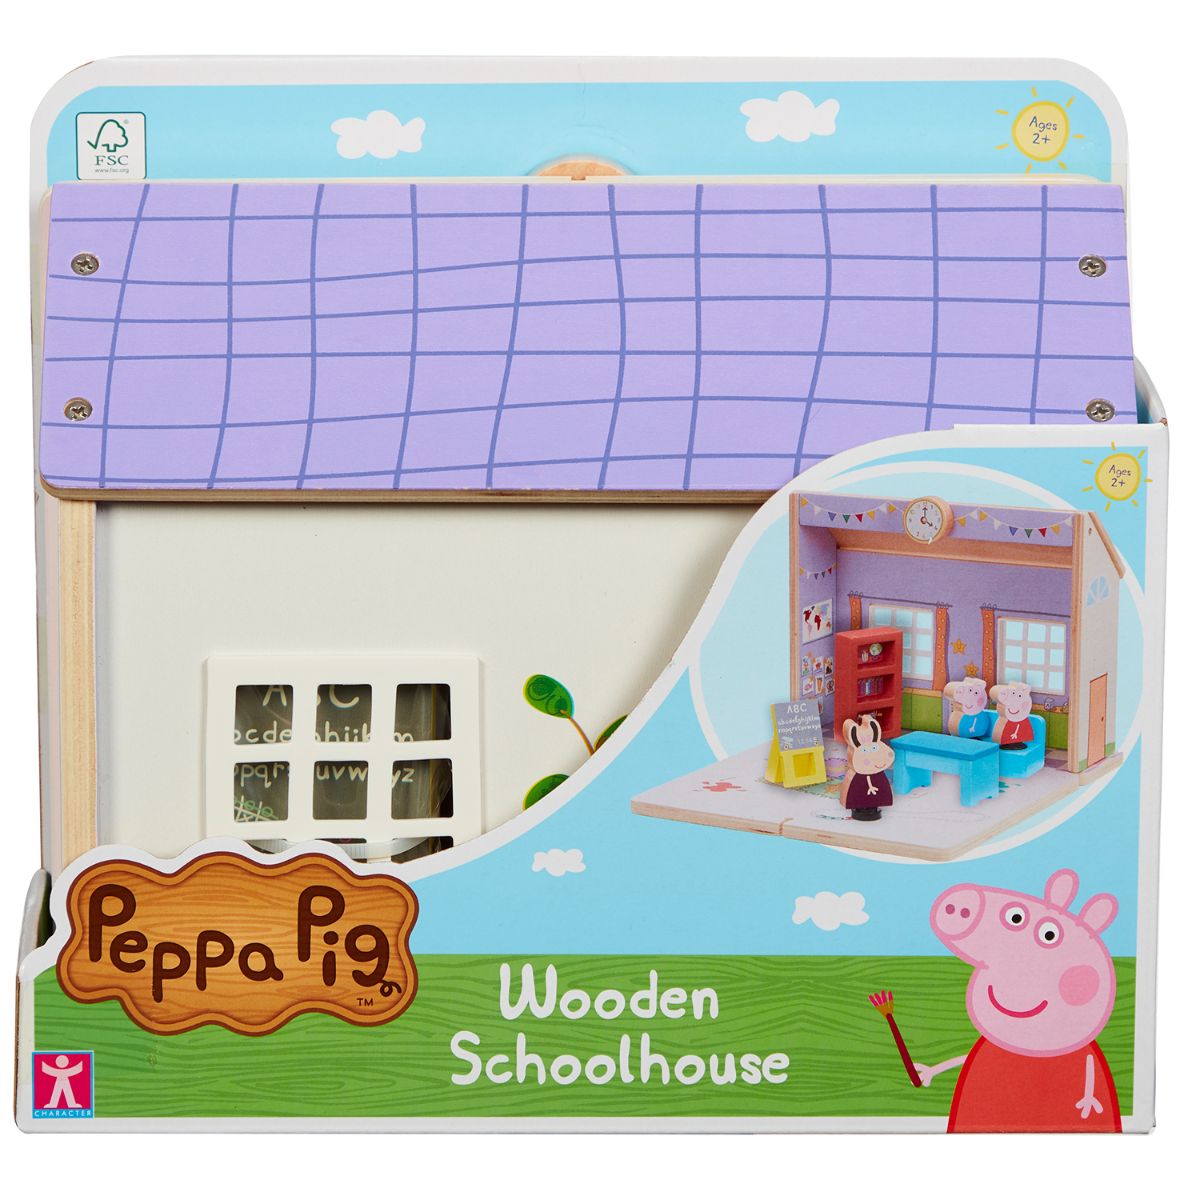 Set scoala din lemn cu figurine, Peppa Pig noriel.ro imagine 2022